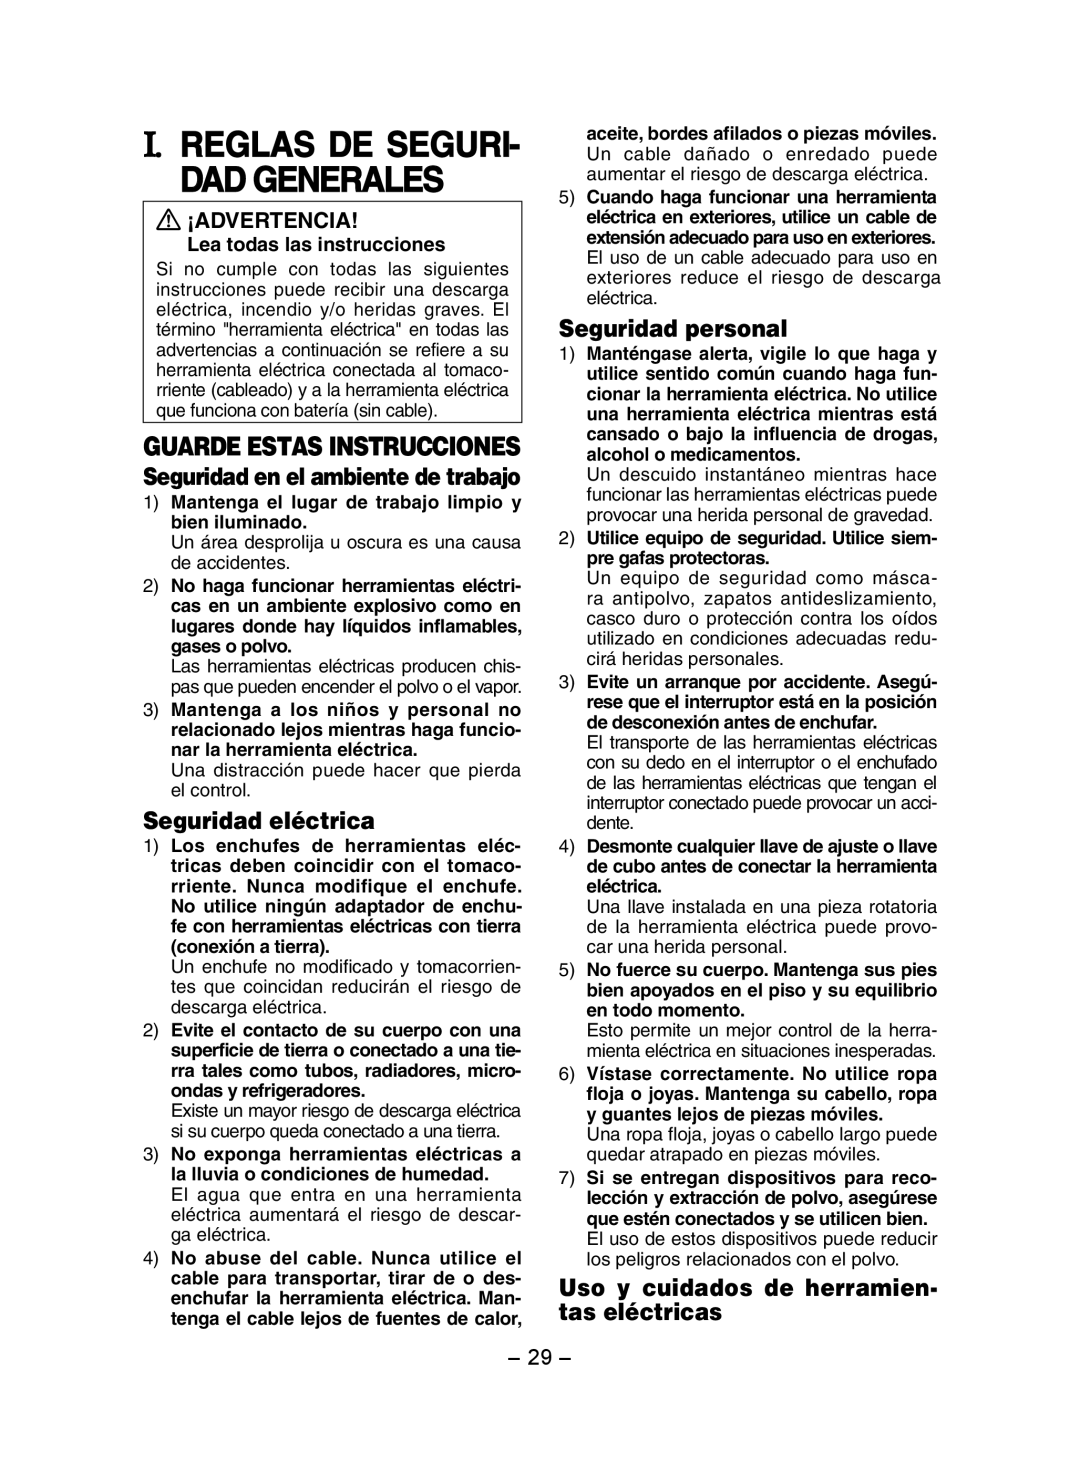 Panasonic EY7202 I. Reglas De Seguri- Dad Generales, Guarde Estas Instrucciones, Seguridad eléctrica, Seguridad personal 